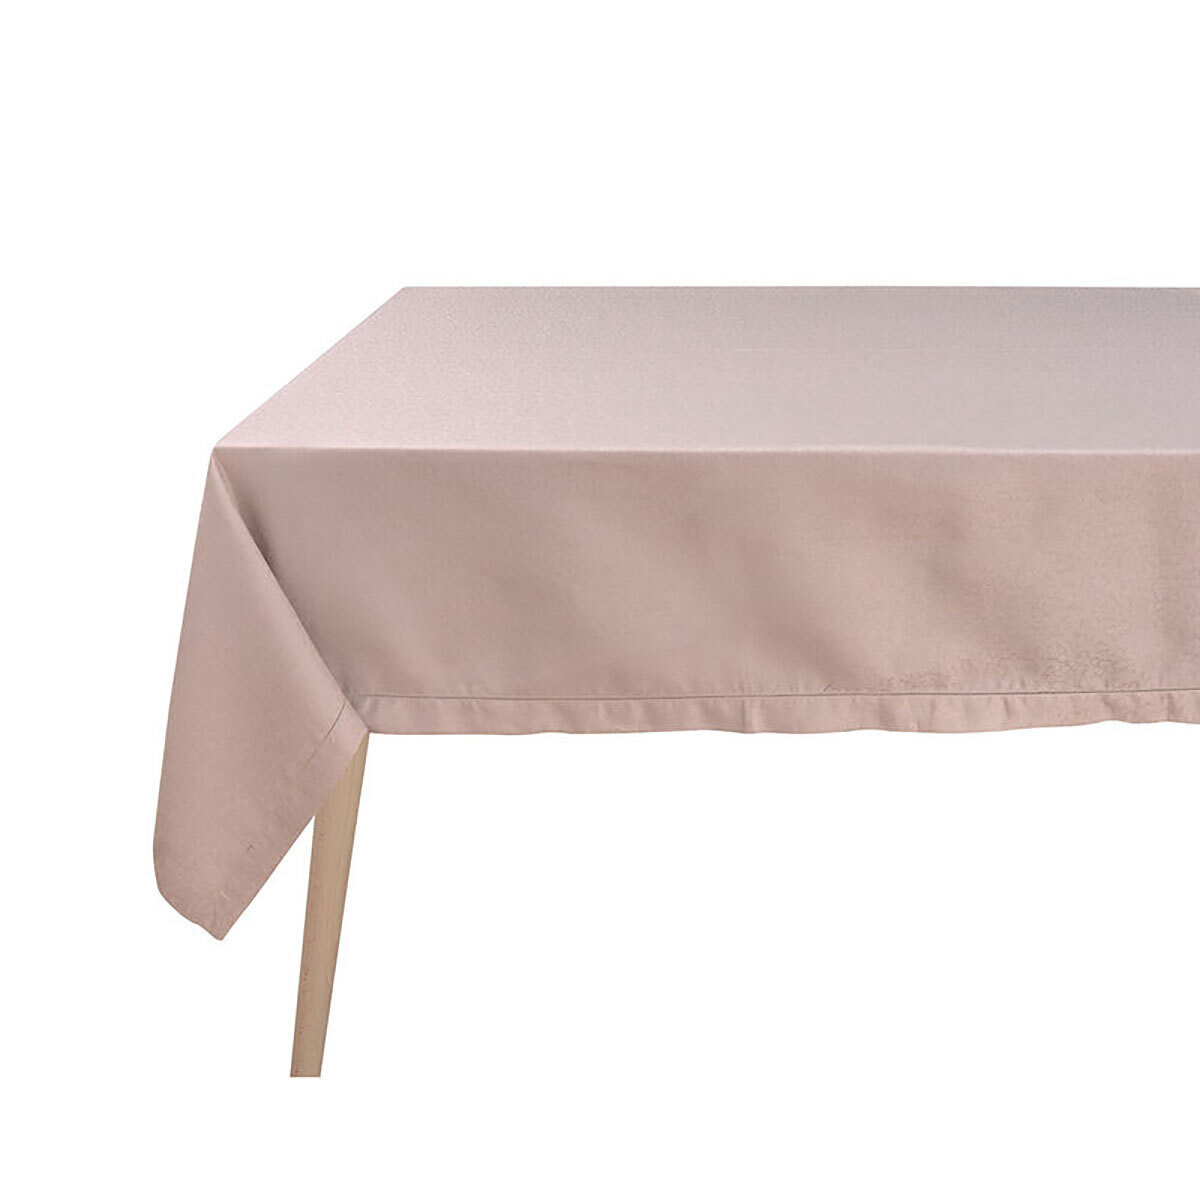 Le Jacquard Francais Portofino Fiori Beige Tablecloth 94 x 94 Inch 28618